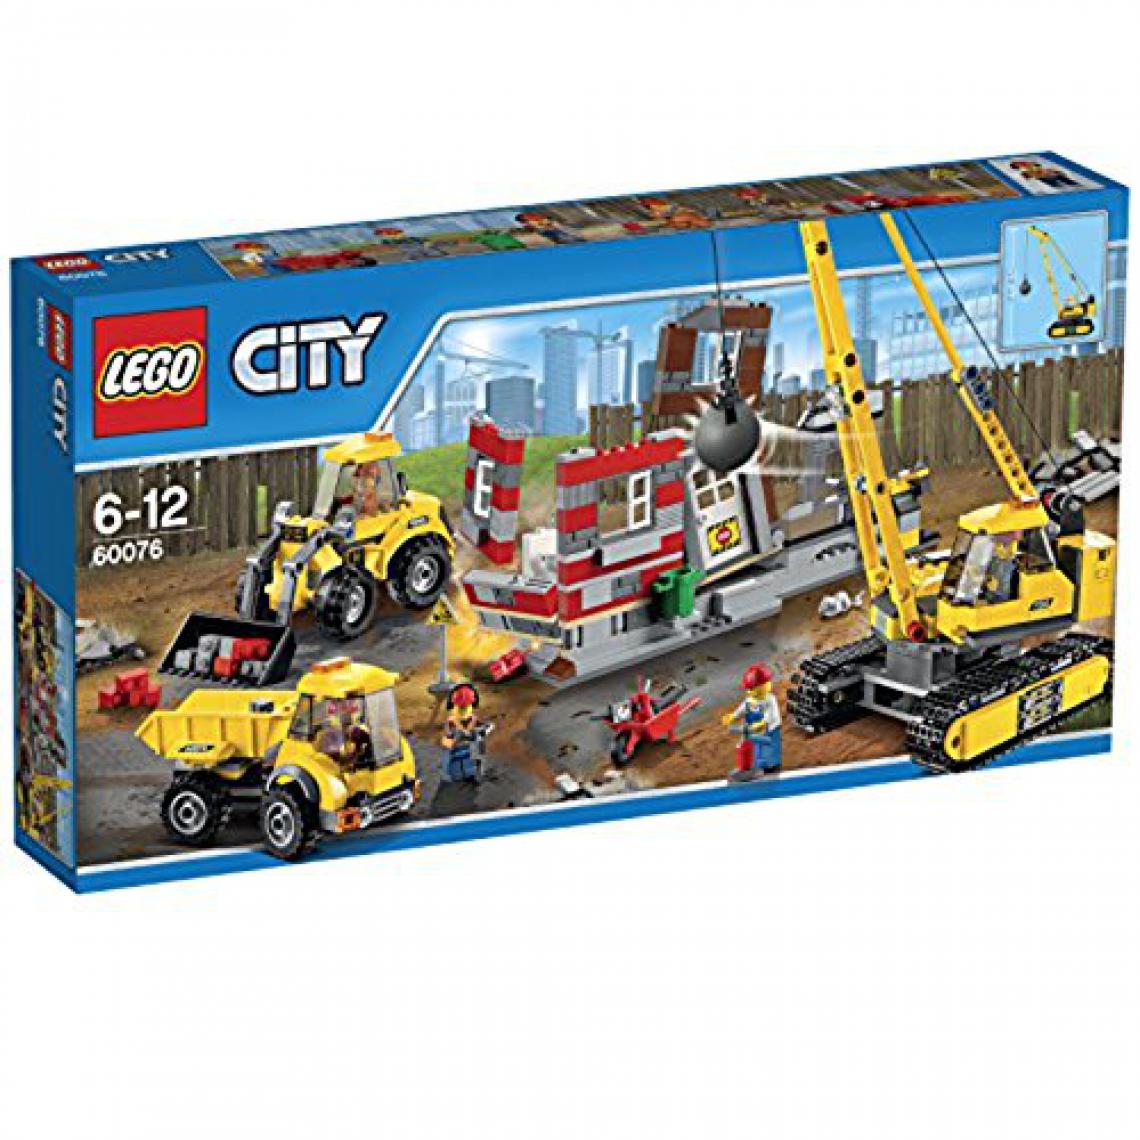 Lego - LEgO city 60076 - Abriss Baustelle - Briques et blocs